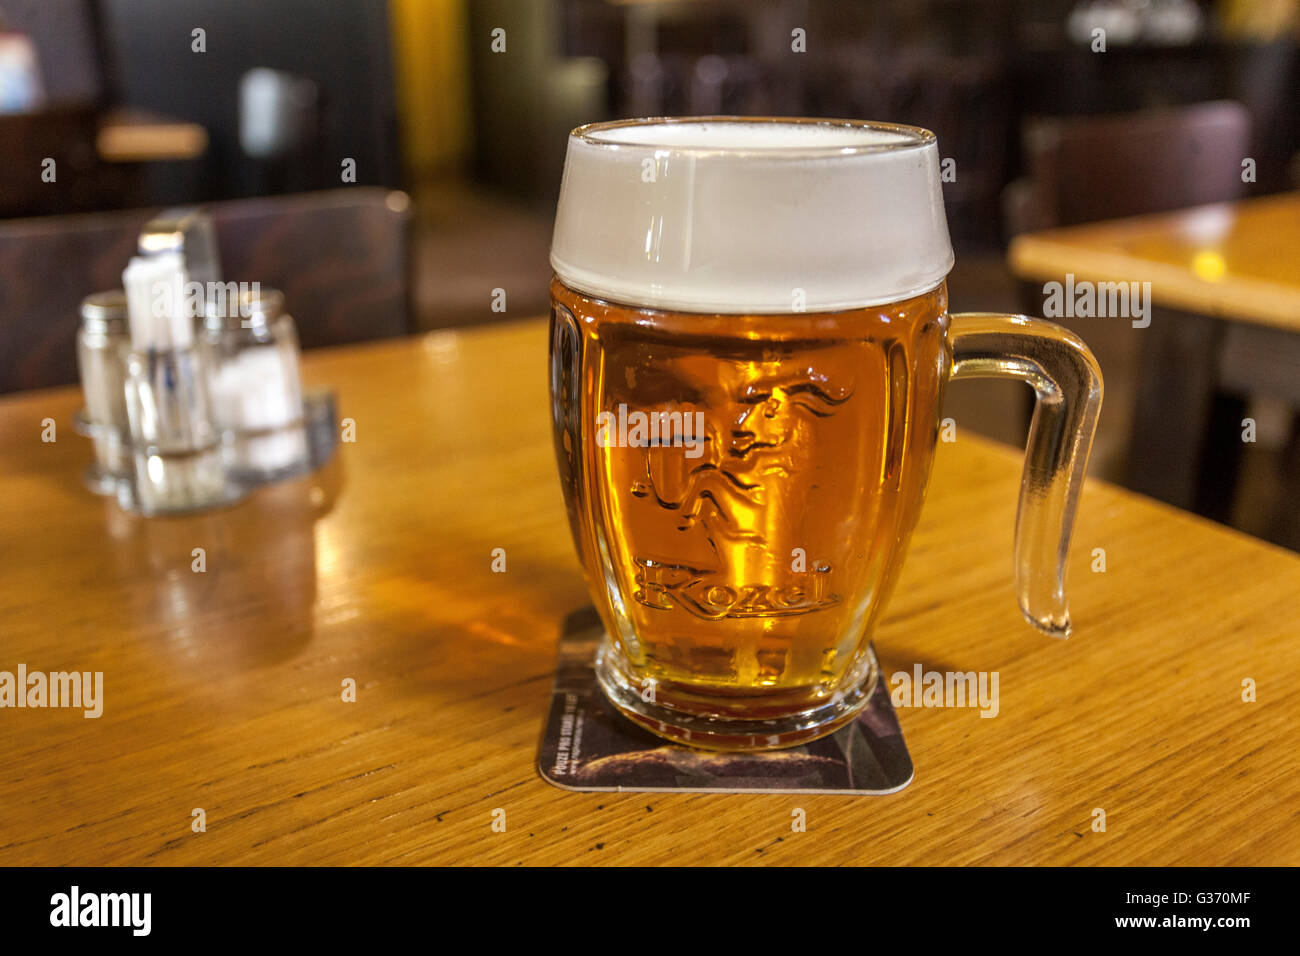 Nuovo progetto birra ceca marche Kozel, Repubblica Ceca Foto Stock